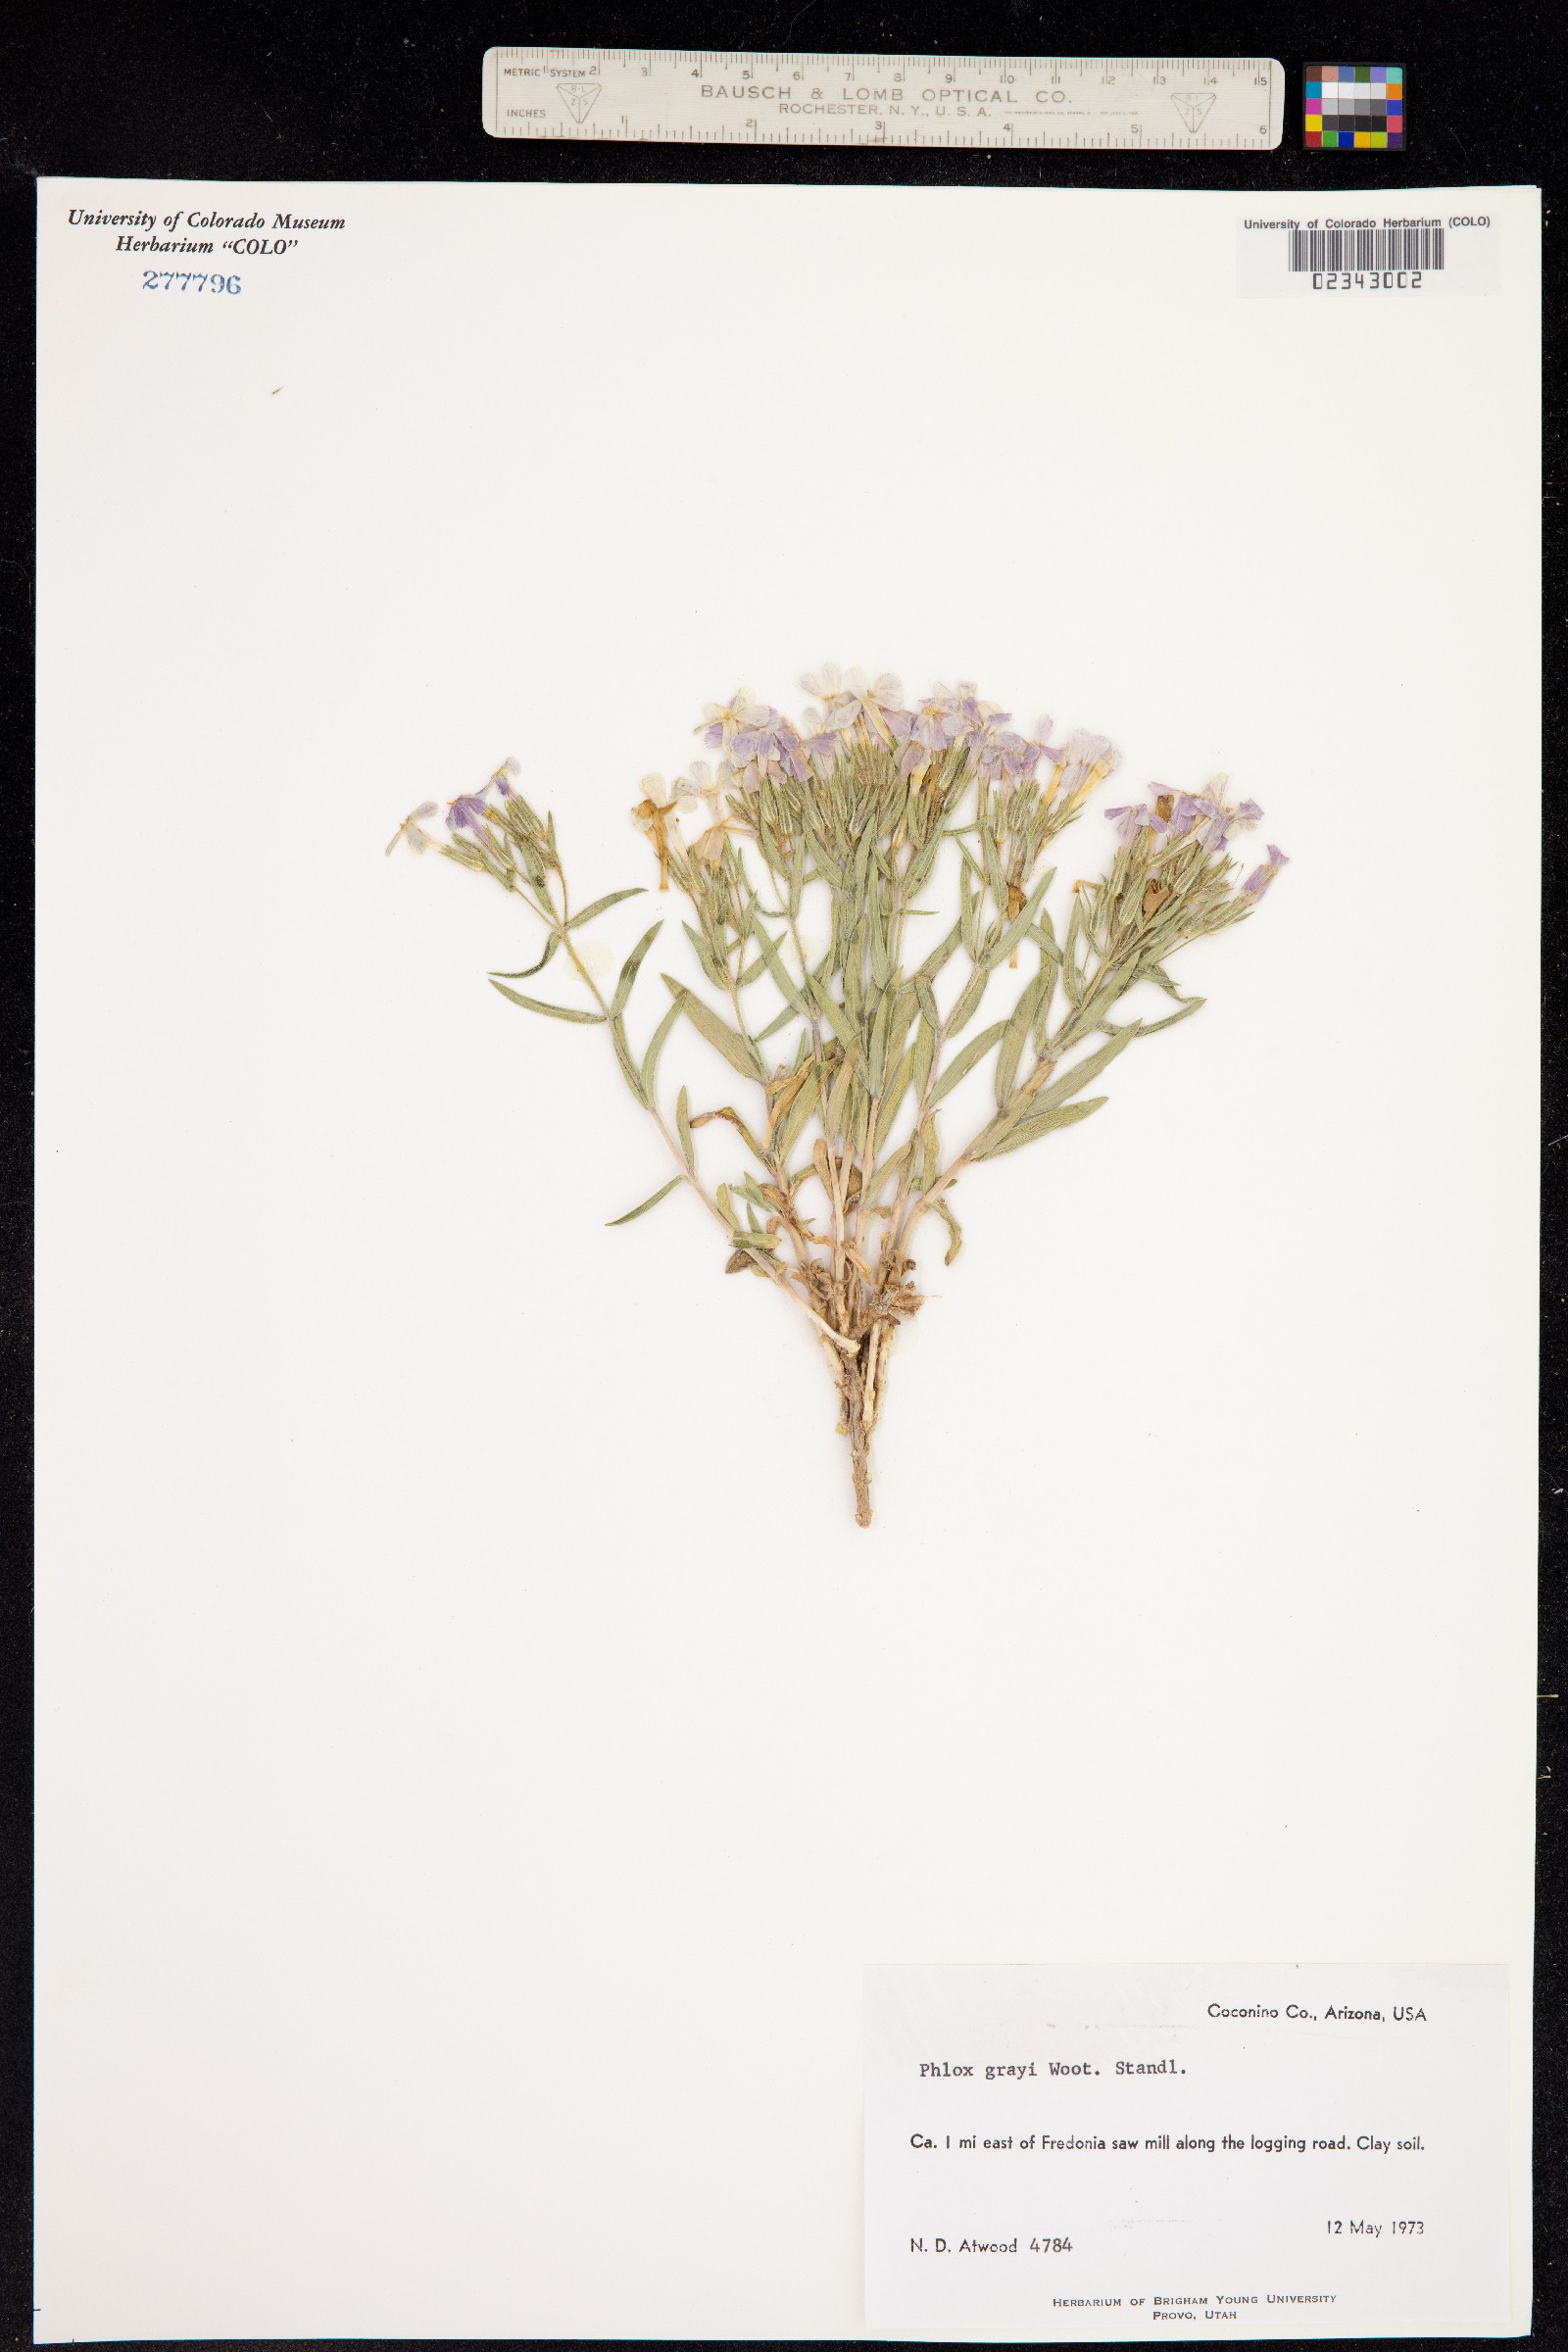 Phlox longifolia subsp. brevifolia image